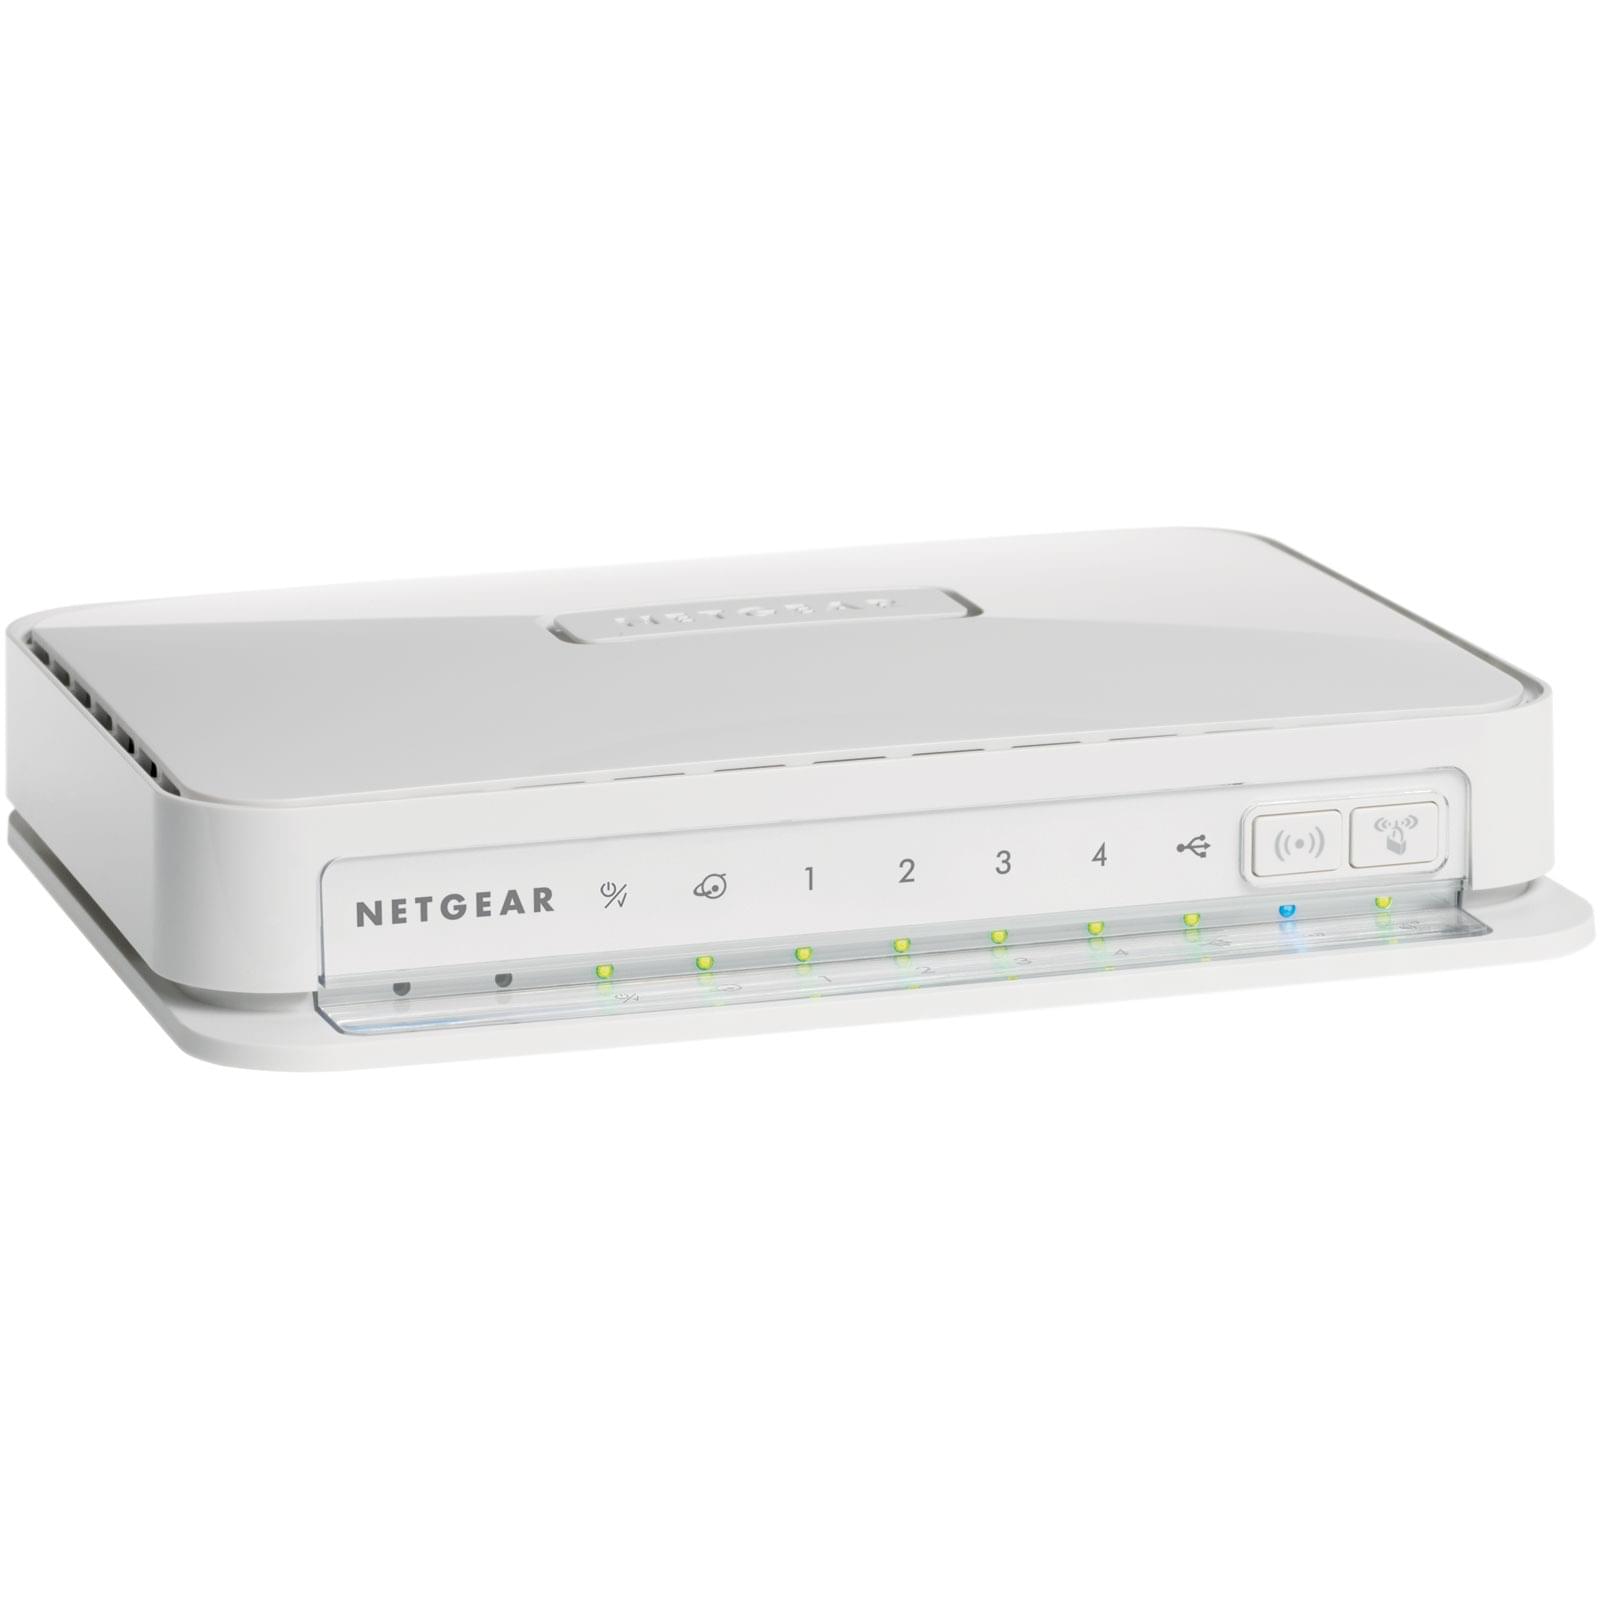 Routeur Netgear WNR2200-100 - Switch 4 ports/WiFi 300M